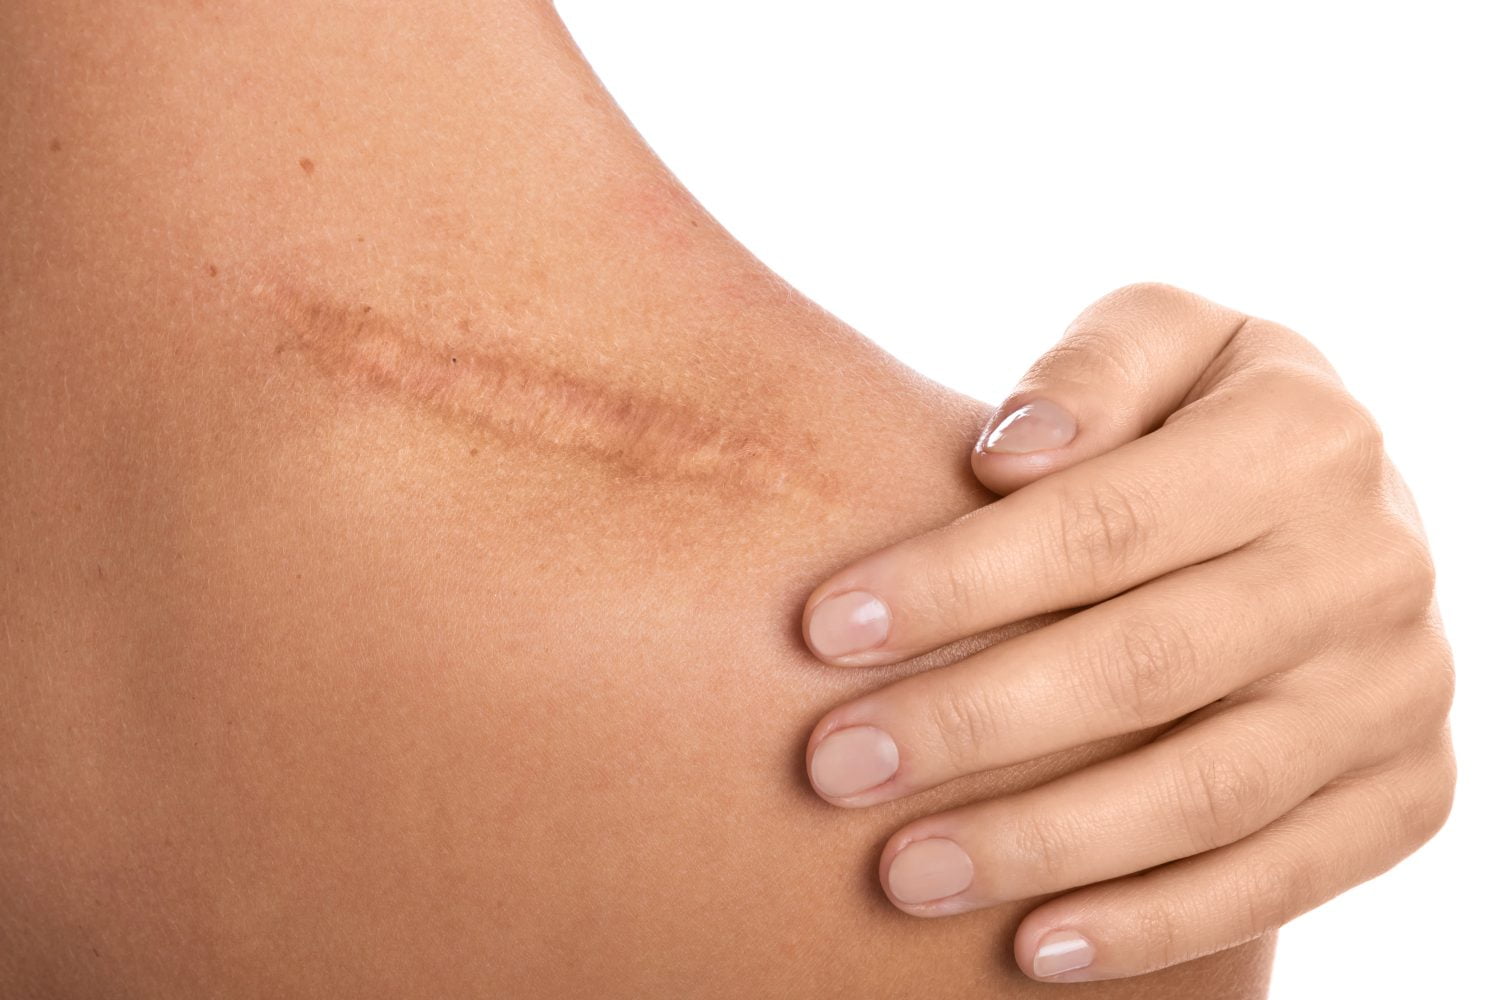 Recetas naturales eficaces para eliminar cicatrices y conservar la piel